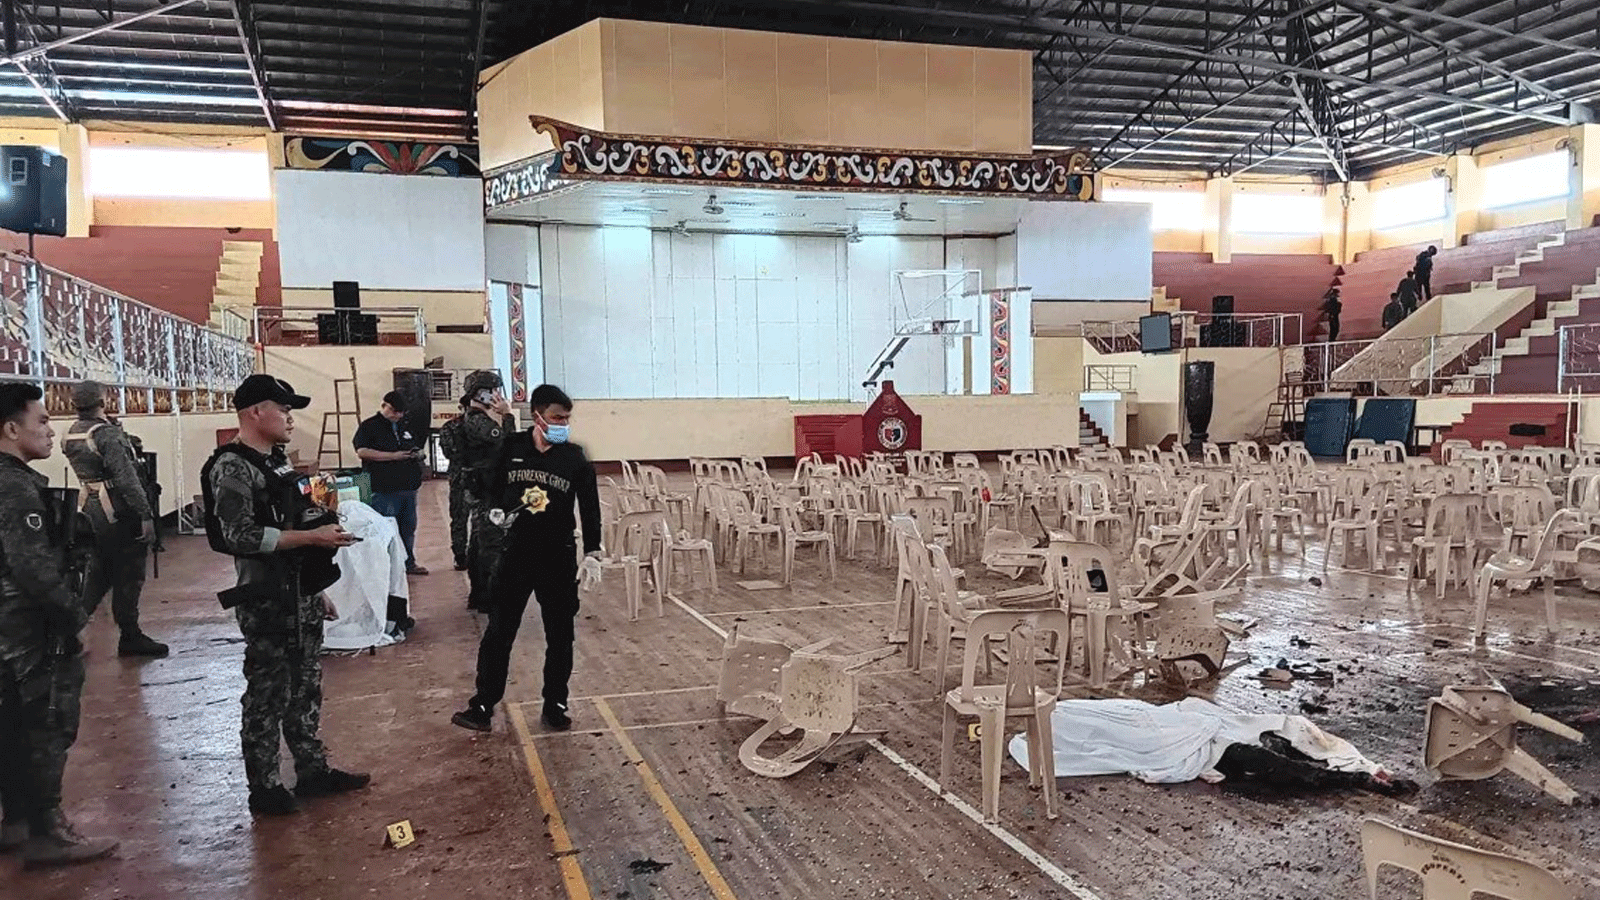 أفراد عسكريون يقفون للحراسة عند مدخل صالة للألعاب الرياضية بينما يبحث محققو الشرطة عن أدلة بعد هجوم بالقنابل أدى إلى مقتل أربعة أشخاص على الأقل في الفلبين يوم أمس الأحد 3 ديسمبر(كانون الاول) 2023